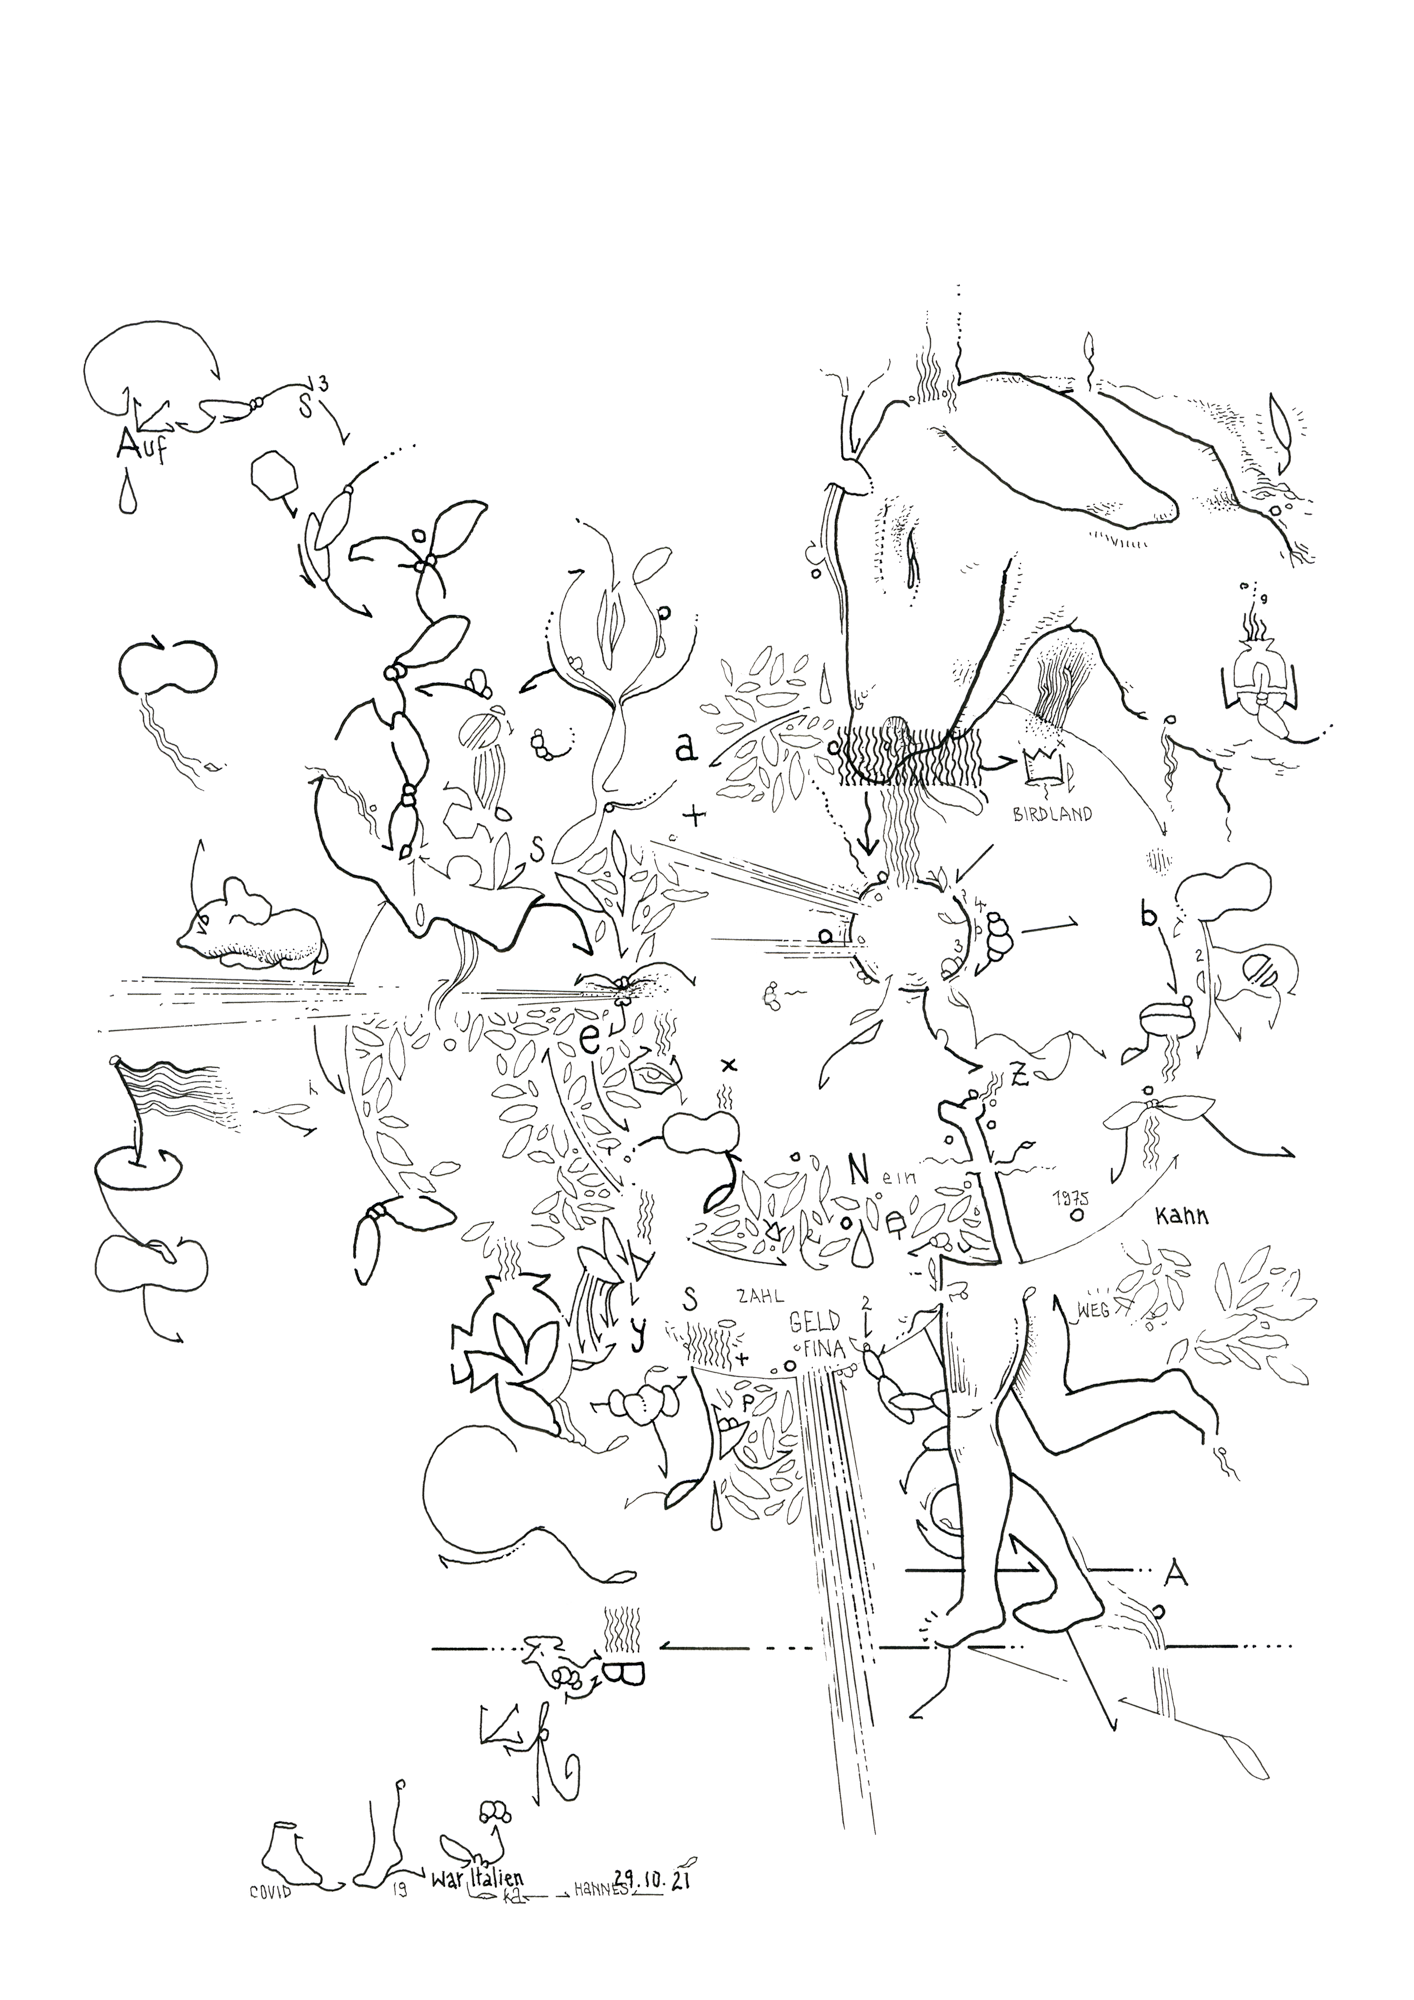 Hannes Kater: Tageszeichnung (Zeichnung/drawing) vom 29.10.2021 (1414 x 2000 Pixel)